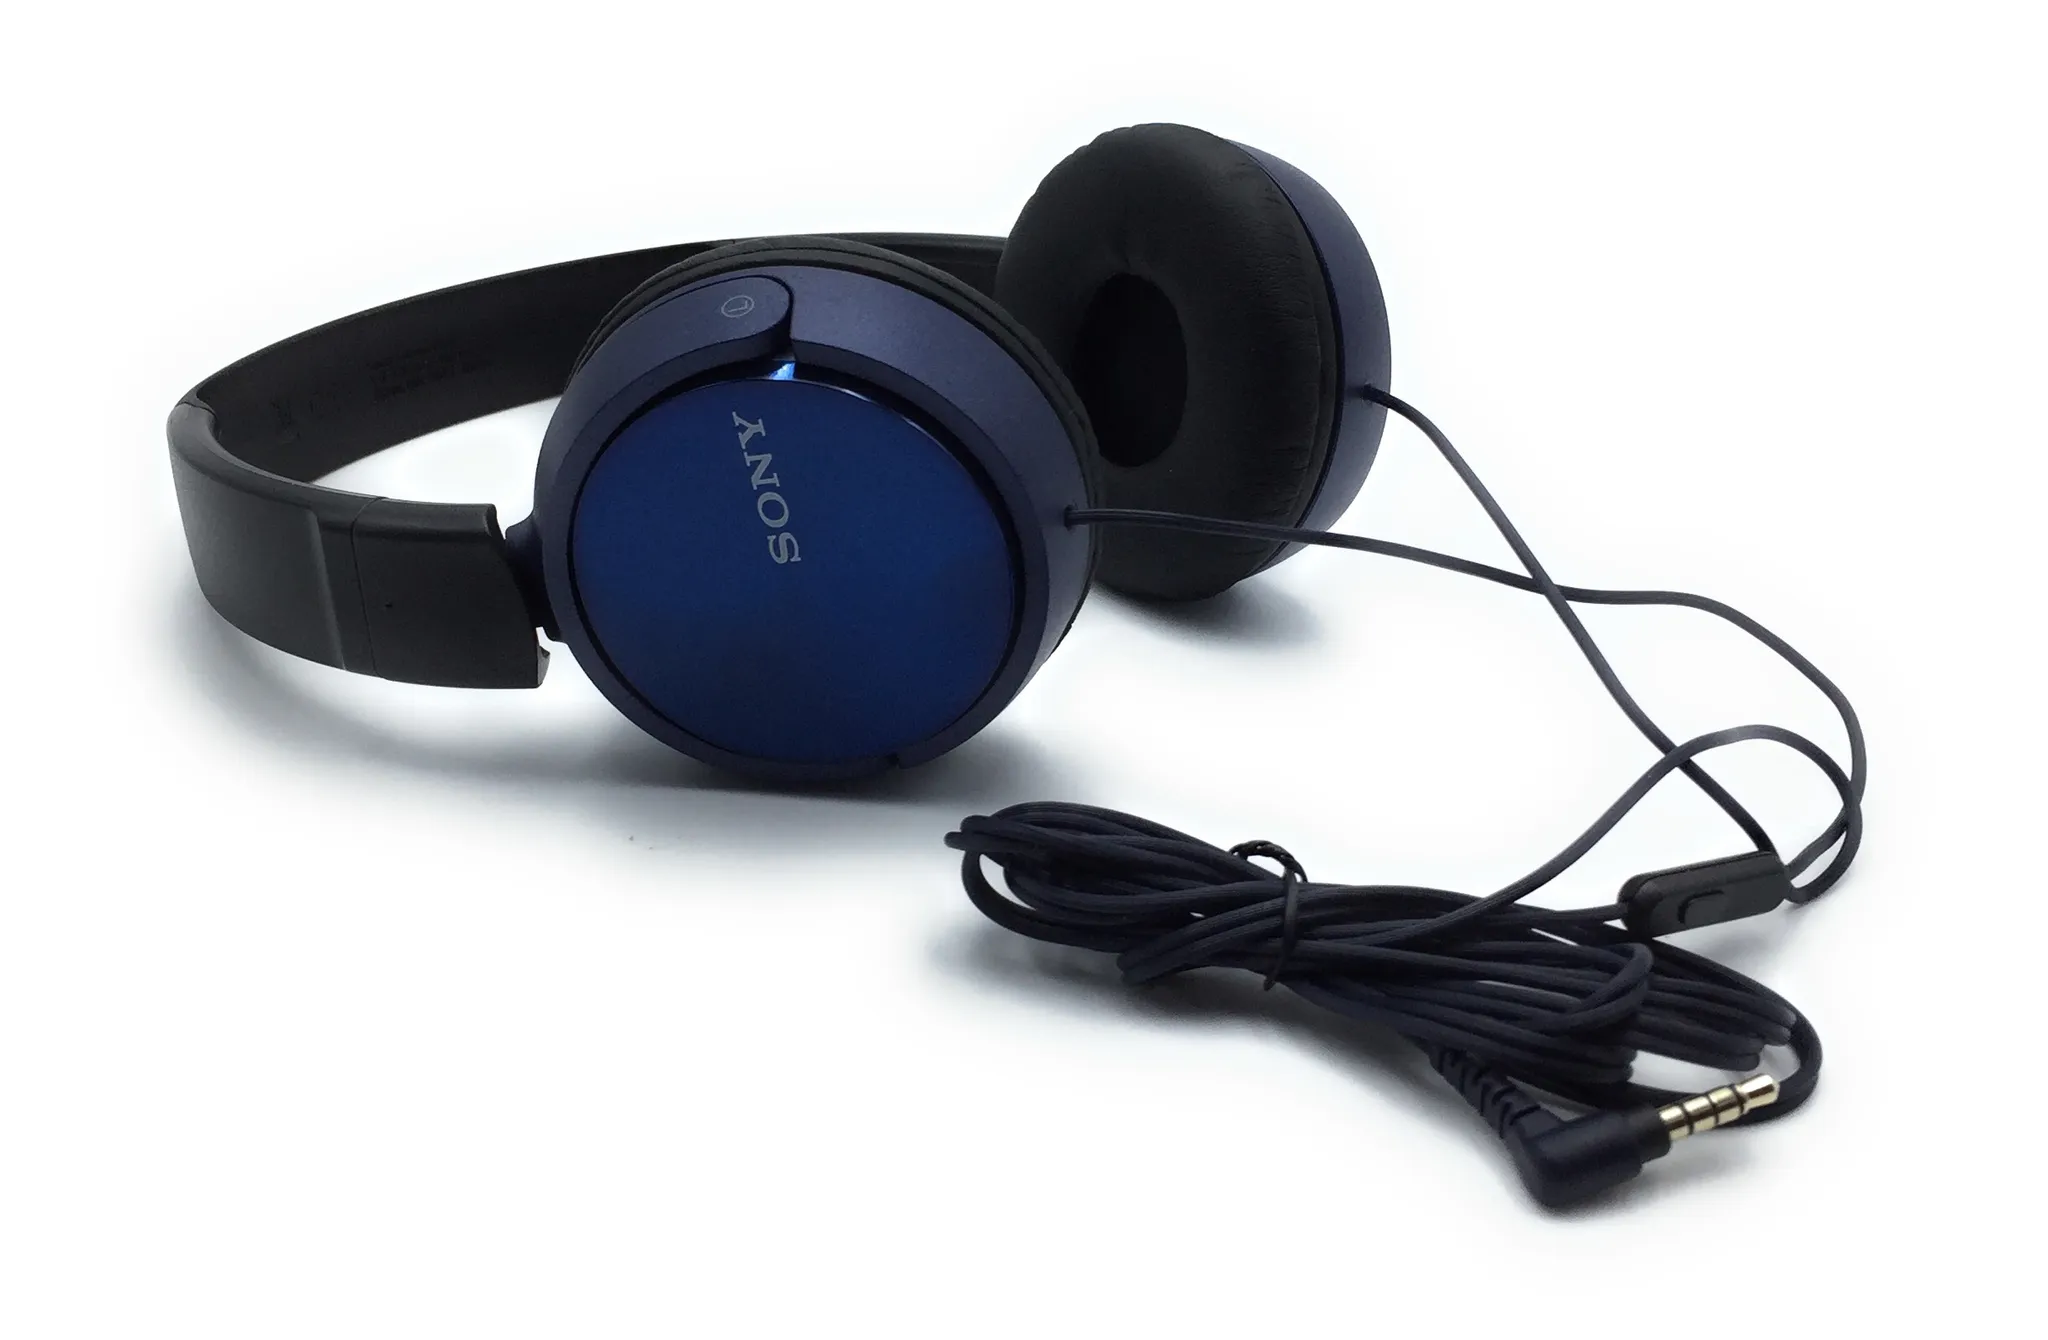 MDR-ZX310AP blau SONY, Over-Ear